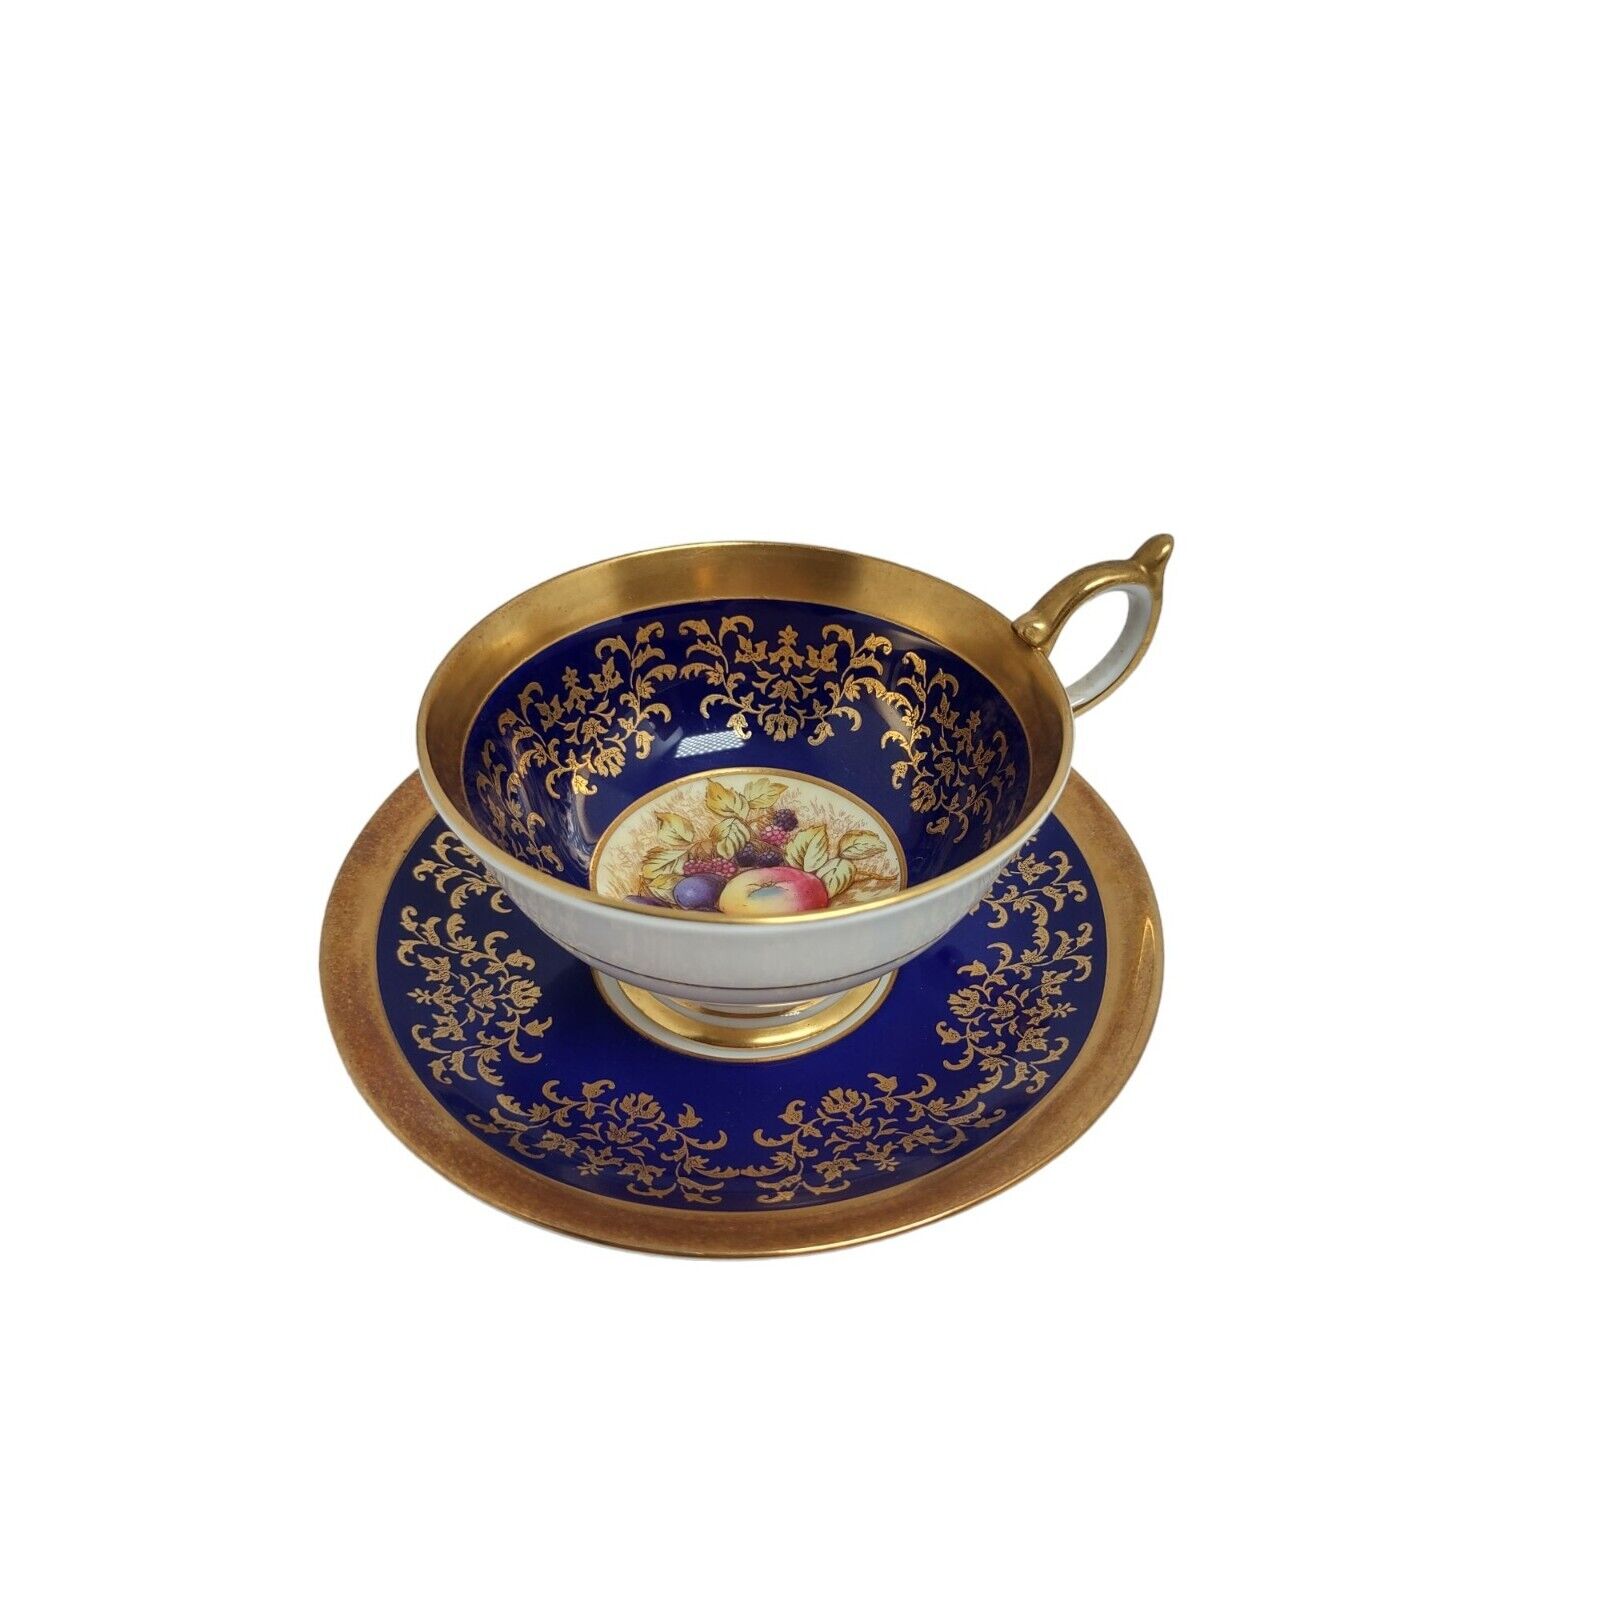 Aynsley Tea Cup And Saucer Pedestal Blue Gold Fruit England Vintage